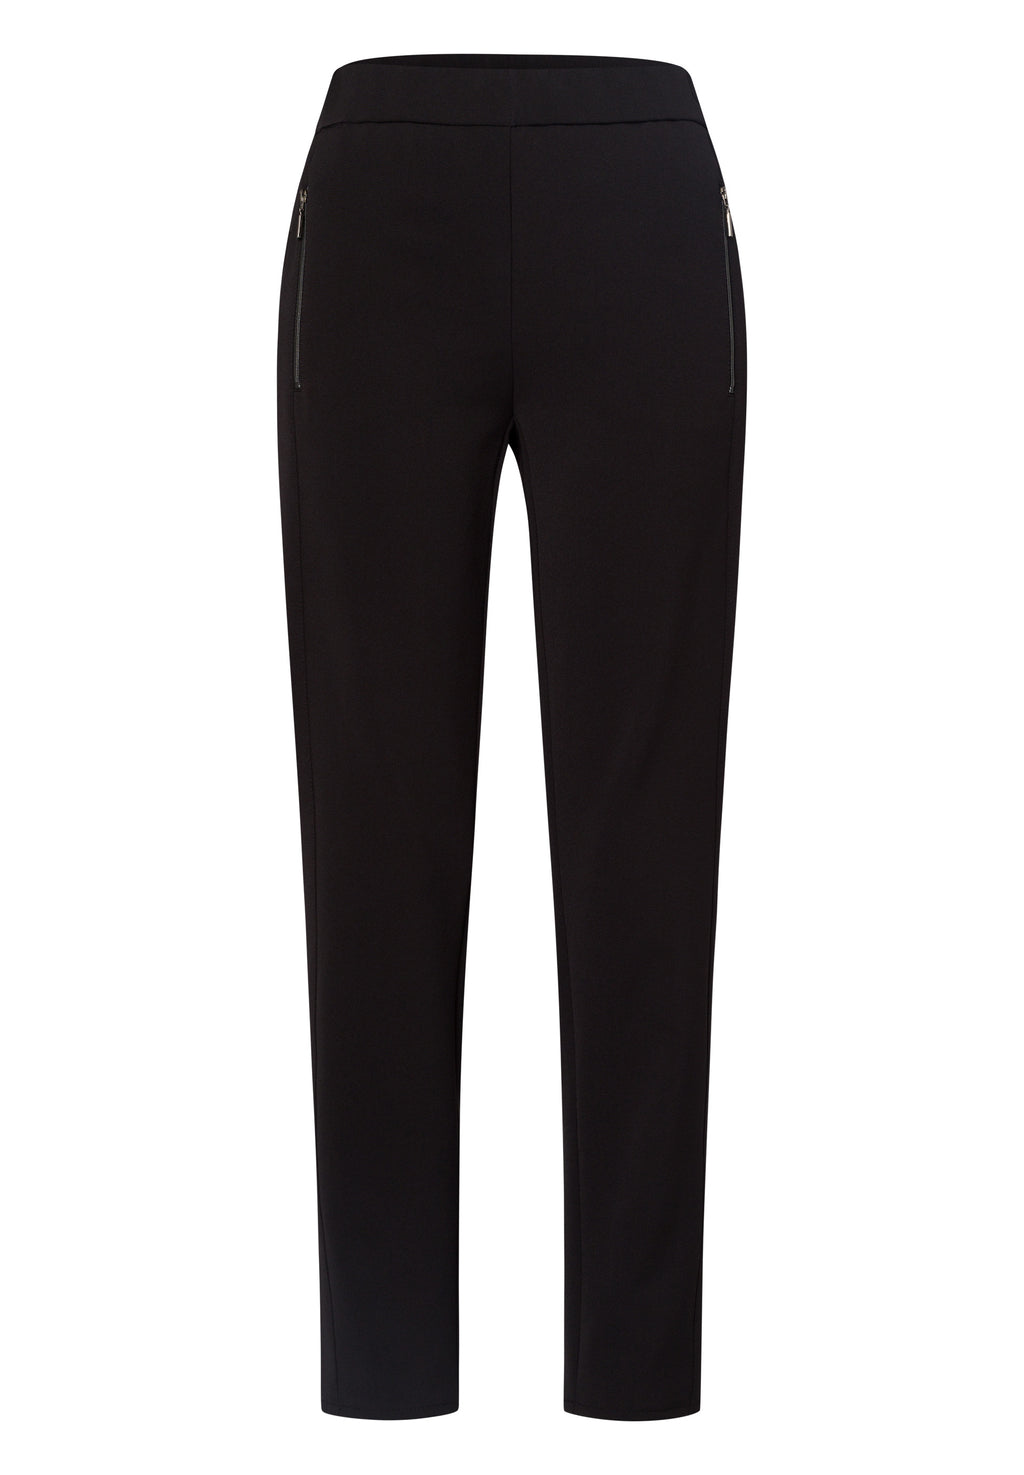 Mia Zip trousers (black)